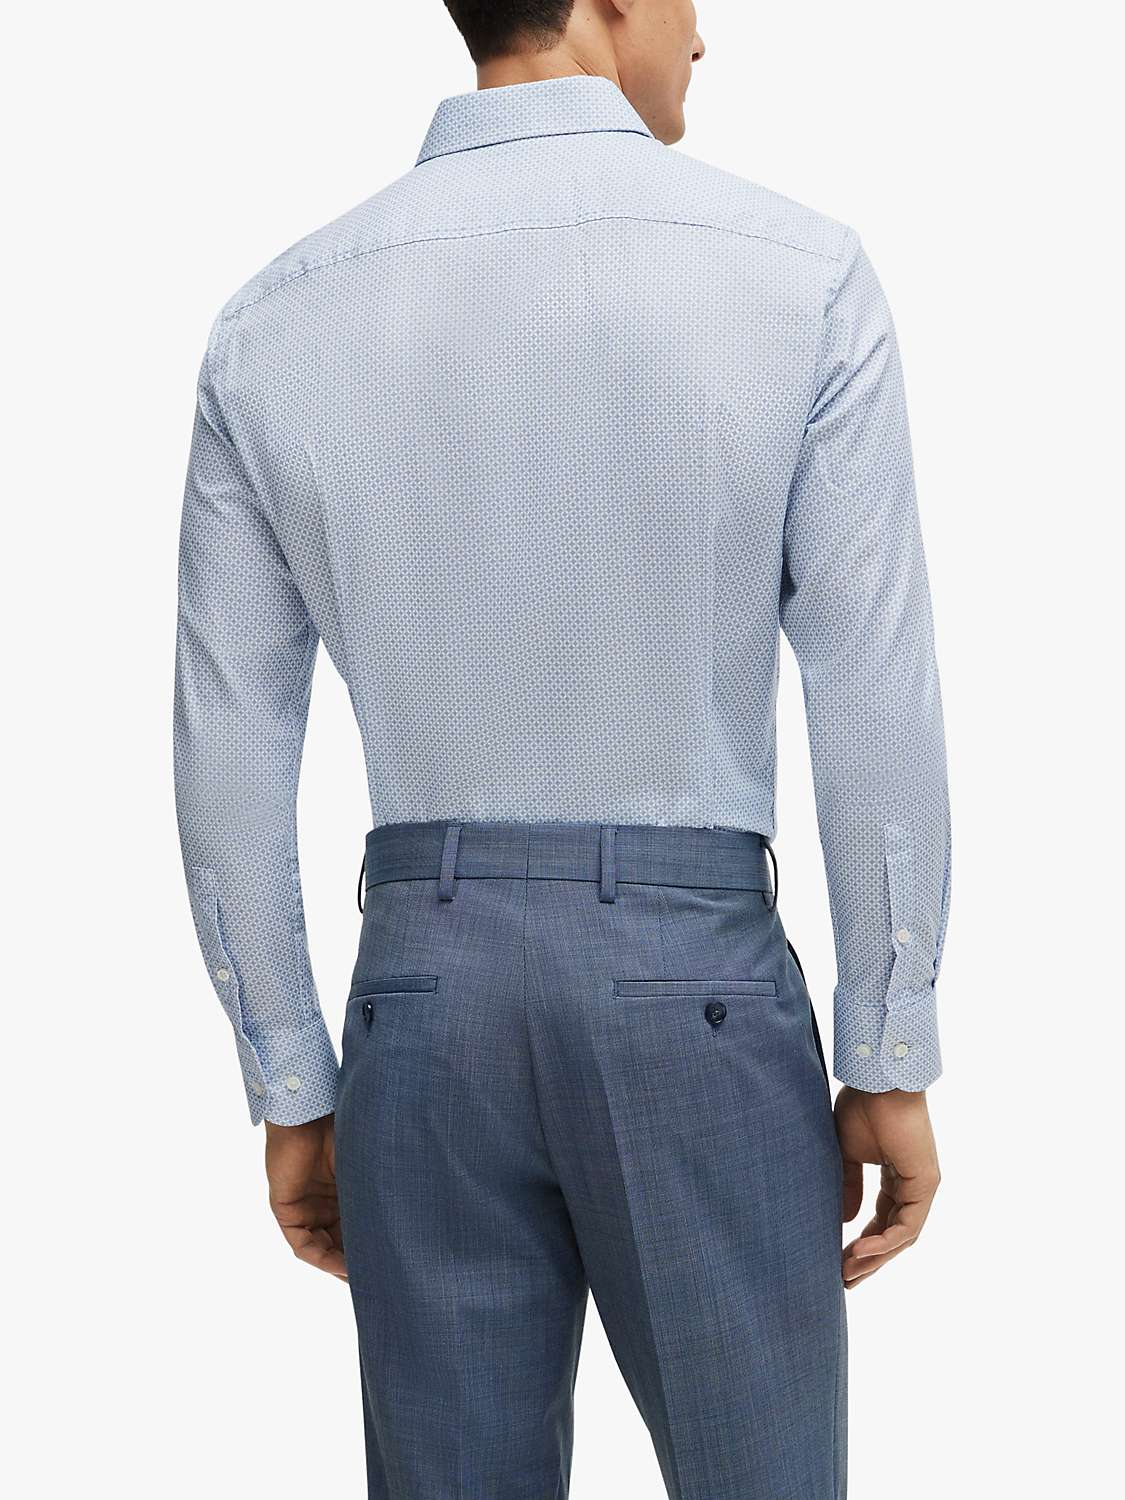 Buy BOSS H-Hank Kent Long Sleeve Shirt, Light/Pastel Blue Online at johnlewis.com